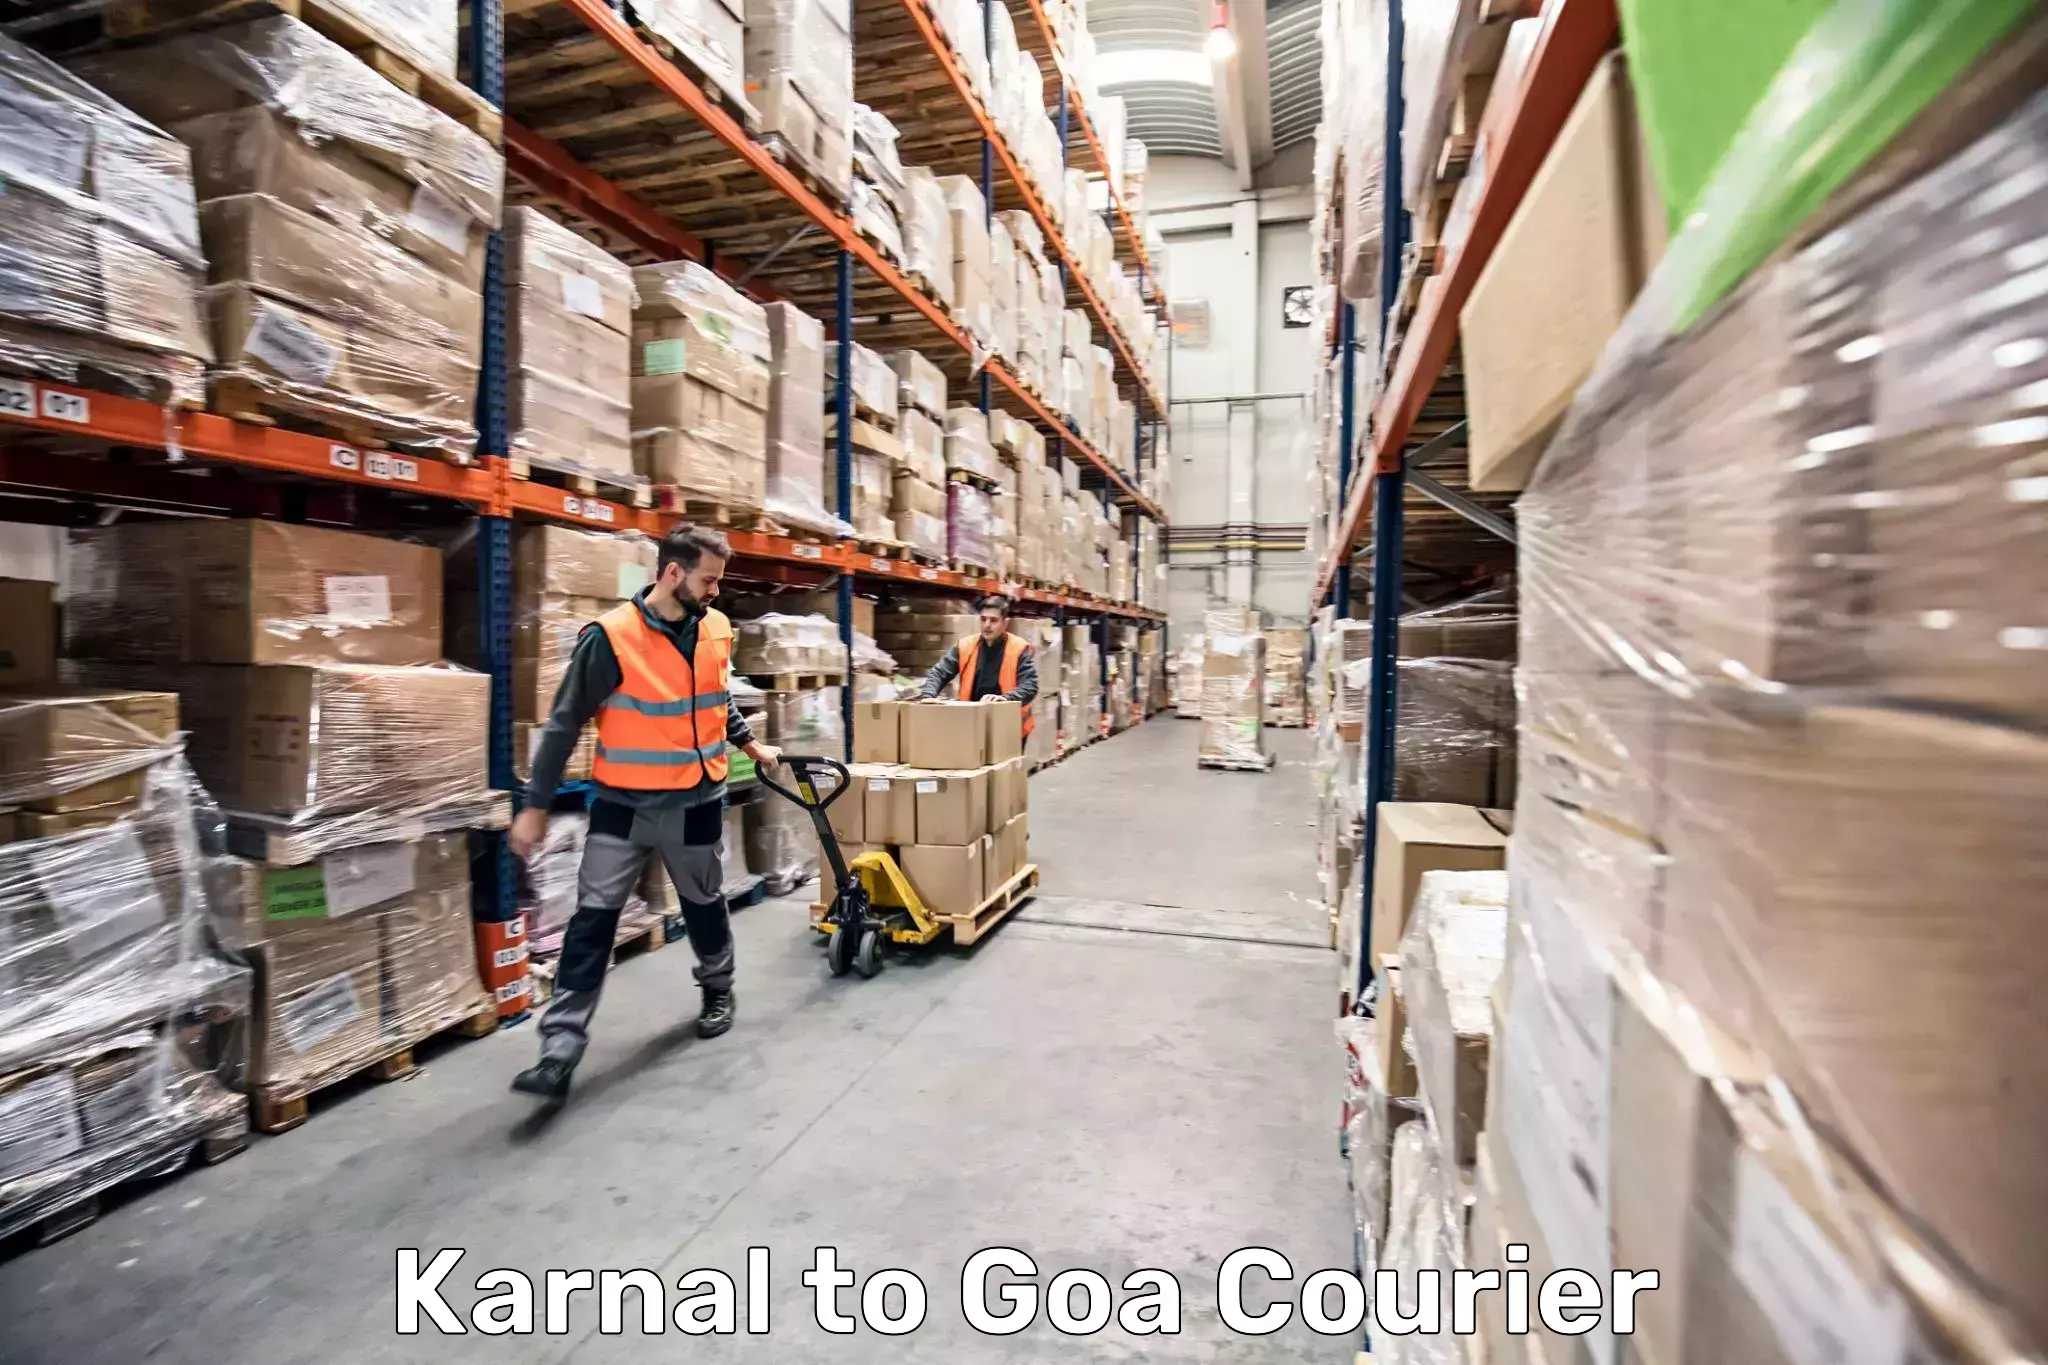 Versatile luggage courier Karnal to Goa